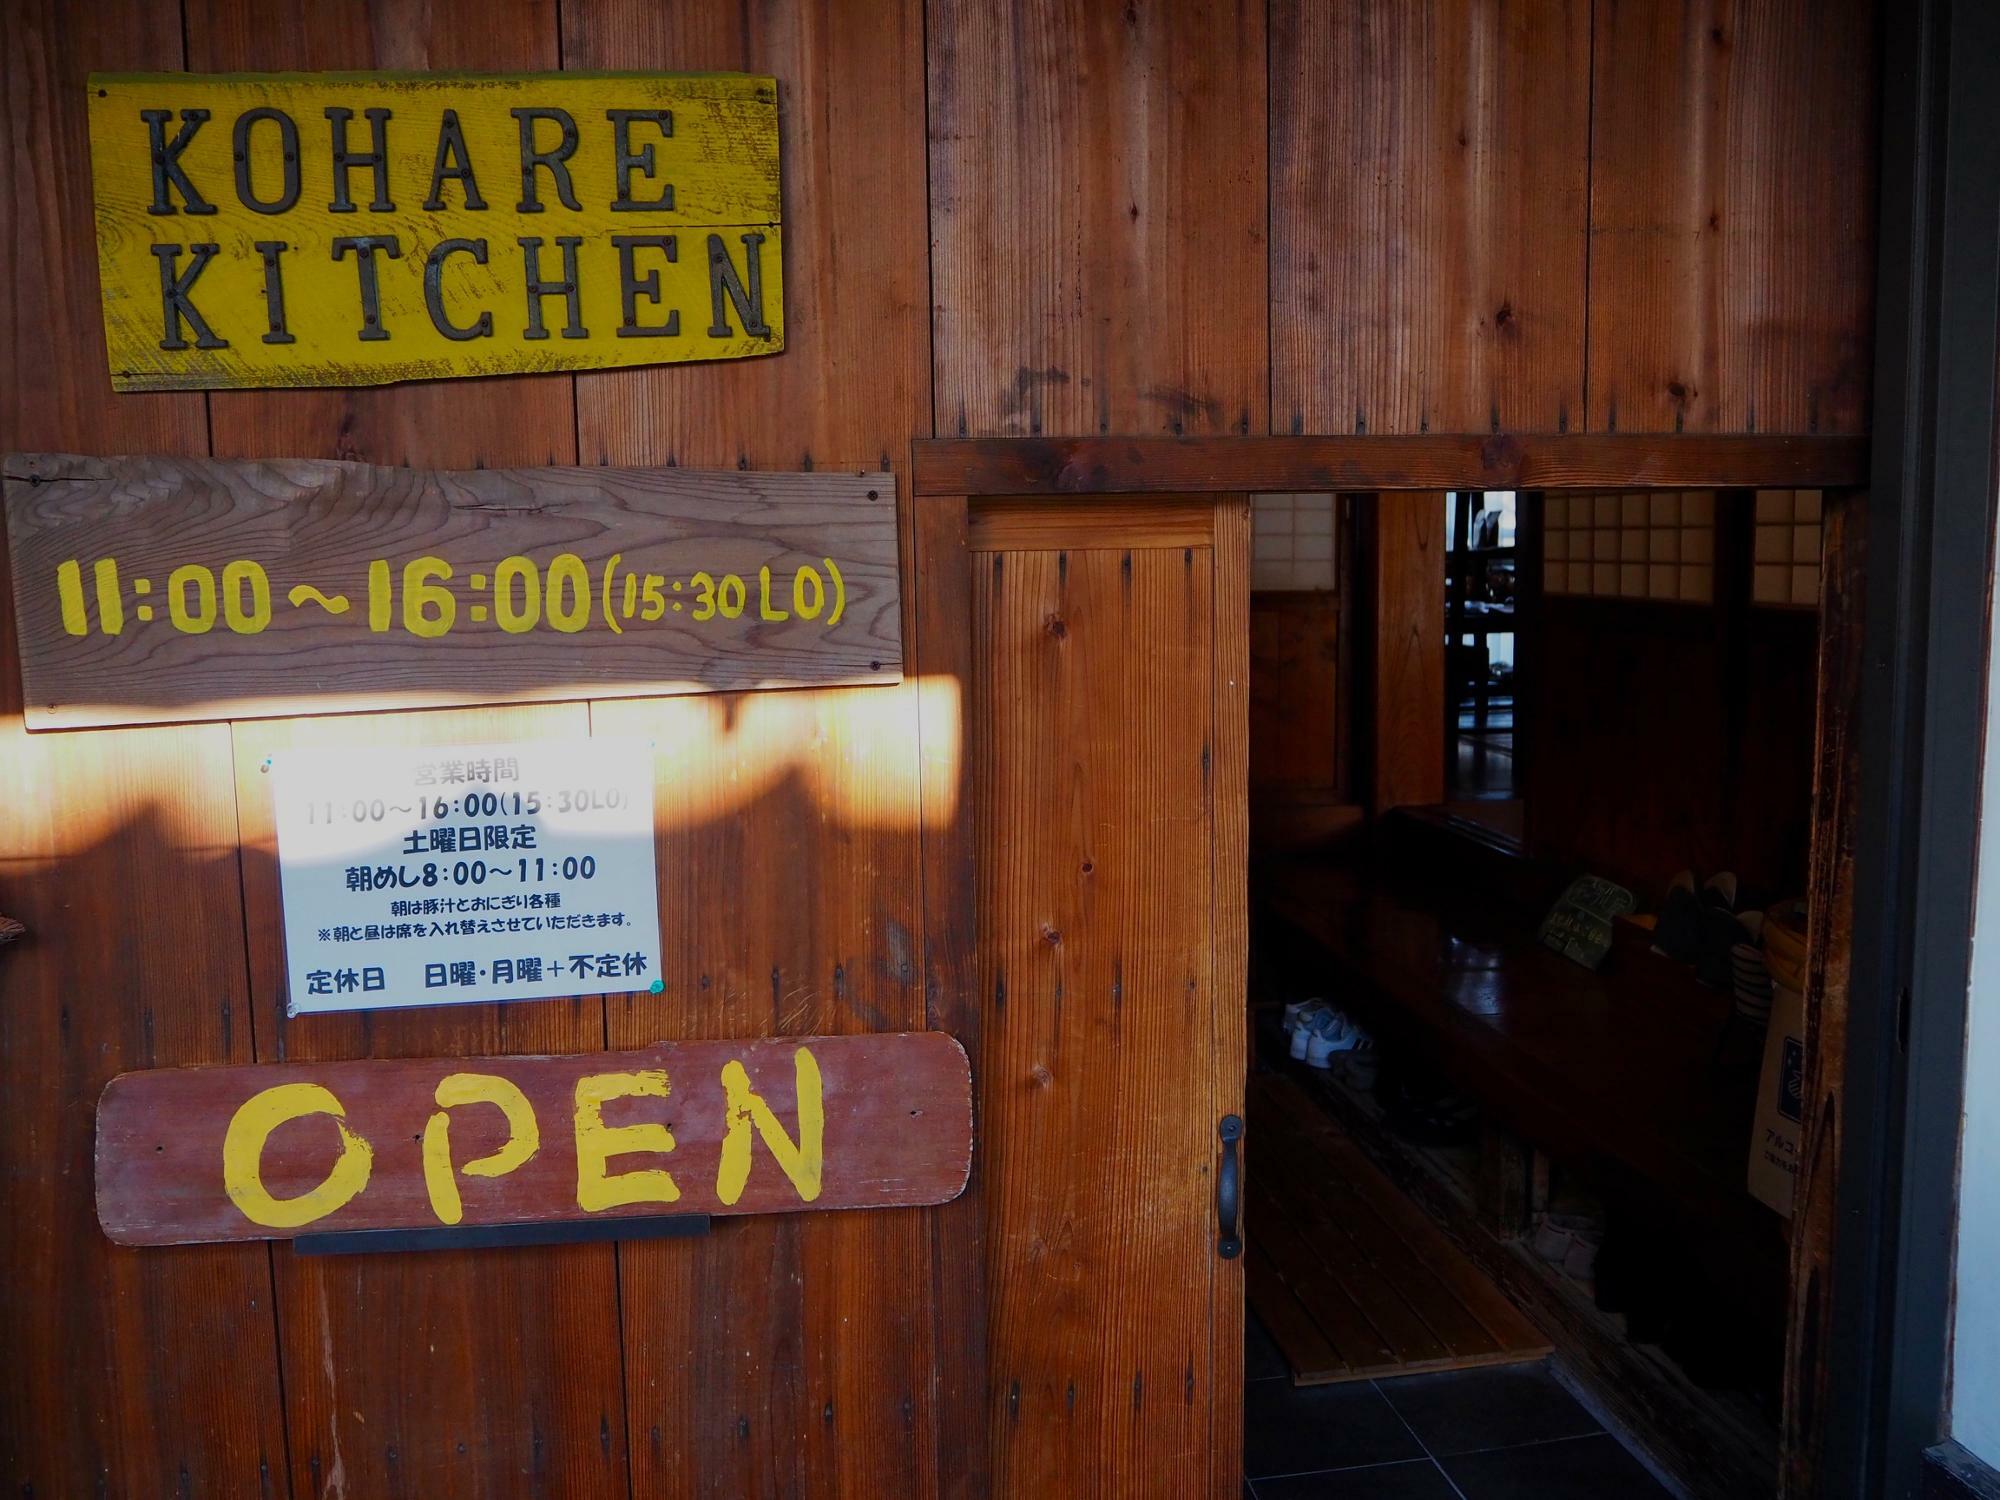 旅館に入るときのようなドキドキを味わえる古民家カフェ「コハレ キッチン」の入り口